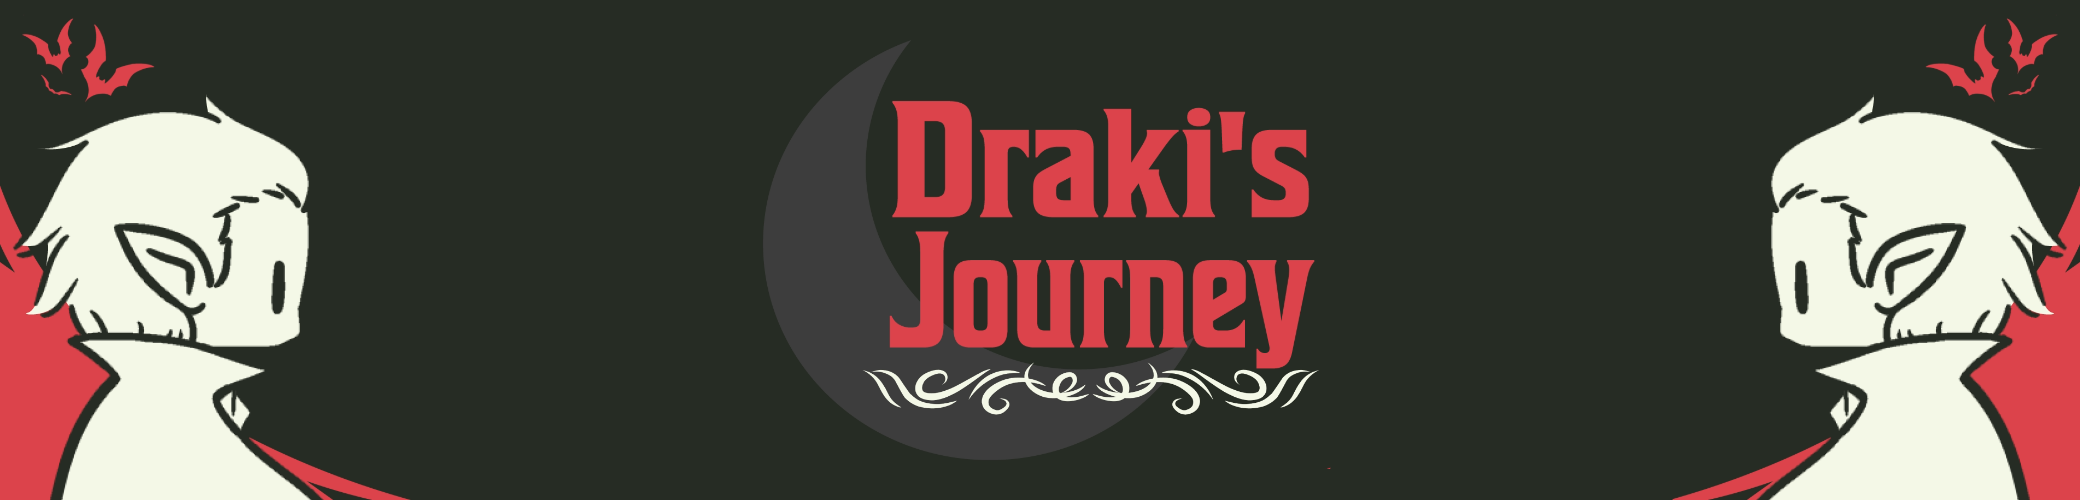 Draki's Journey